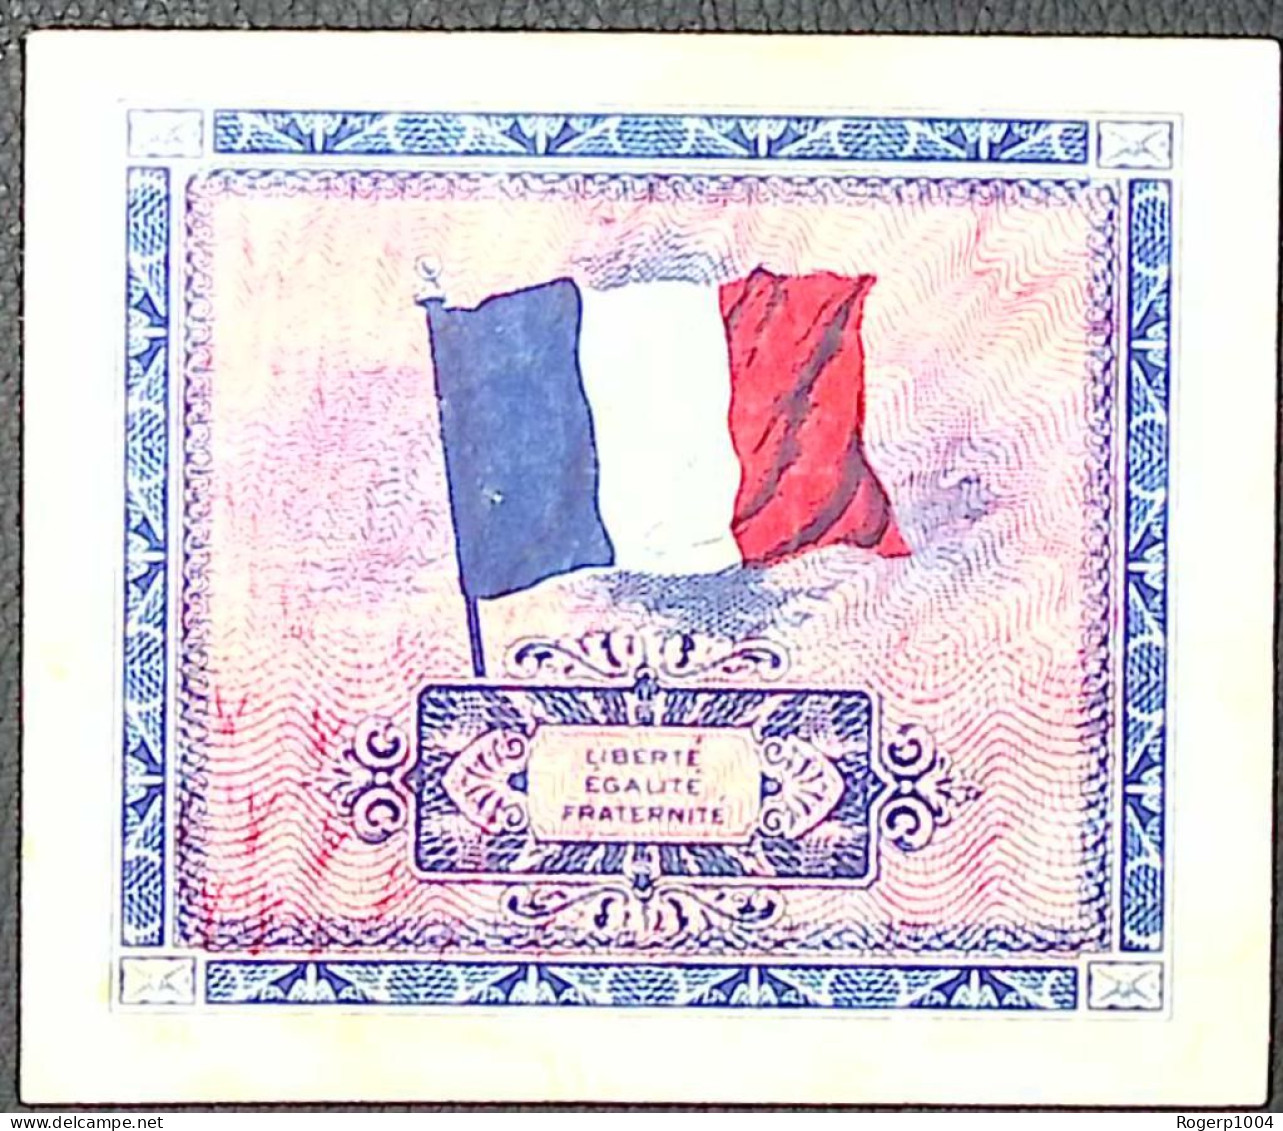 FRANCE * Billets Du Trésor * 5 Francs Drapeau * 1944 * Série 2 * Etat/Grade TTB/VF - 1944 Vlag/Frankrijk